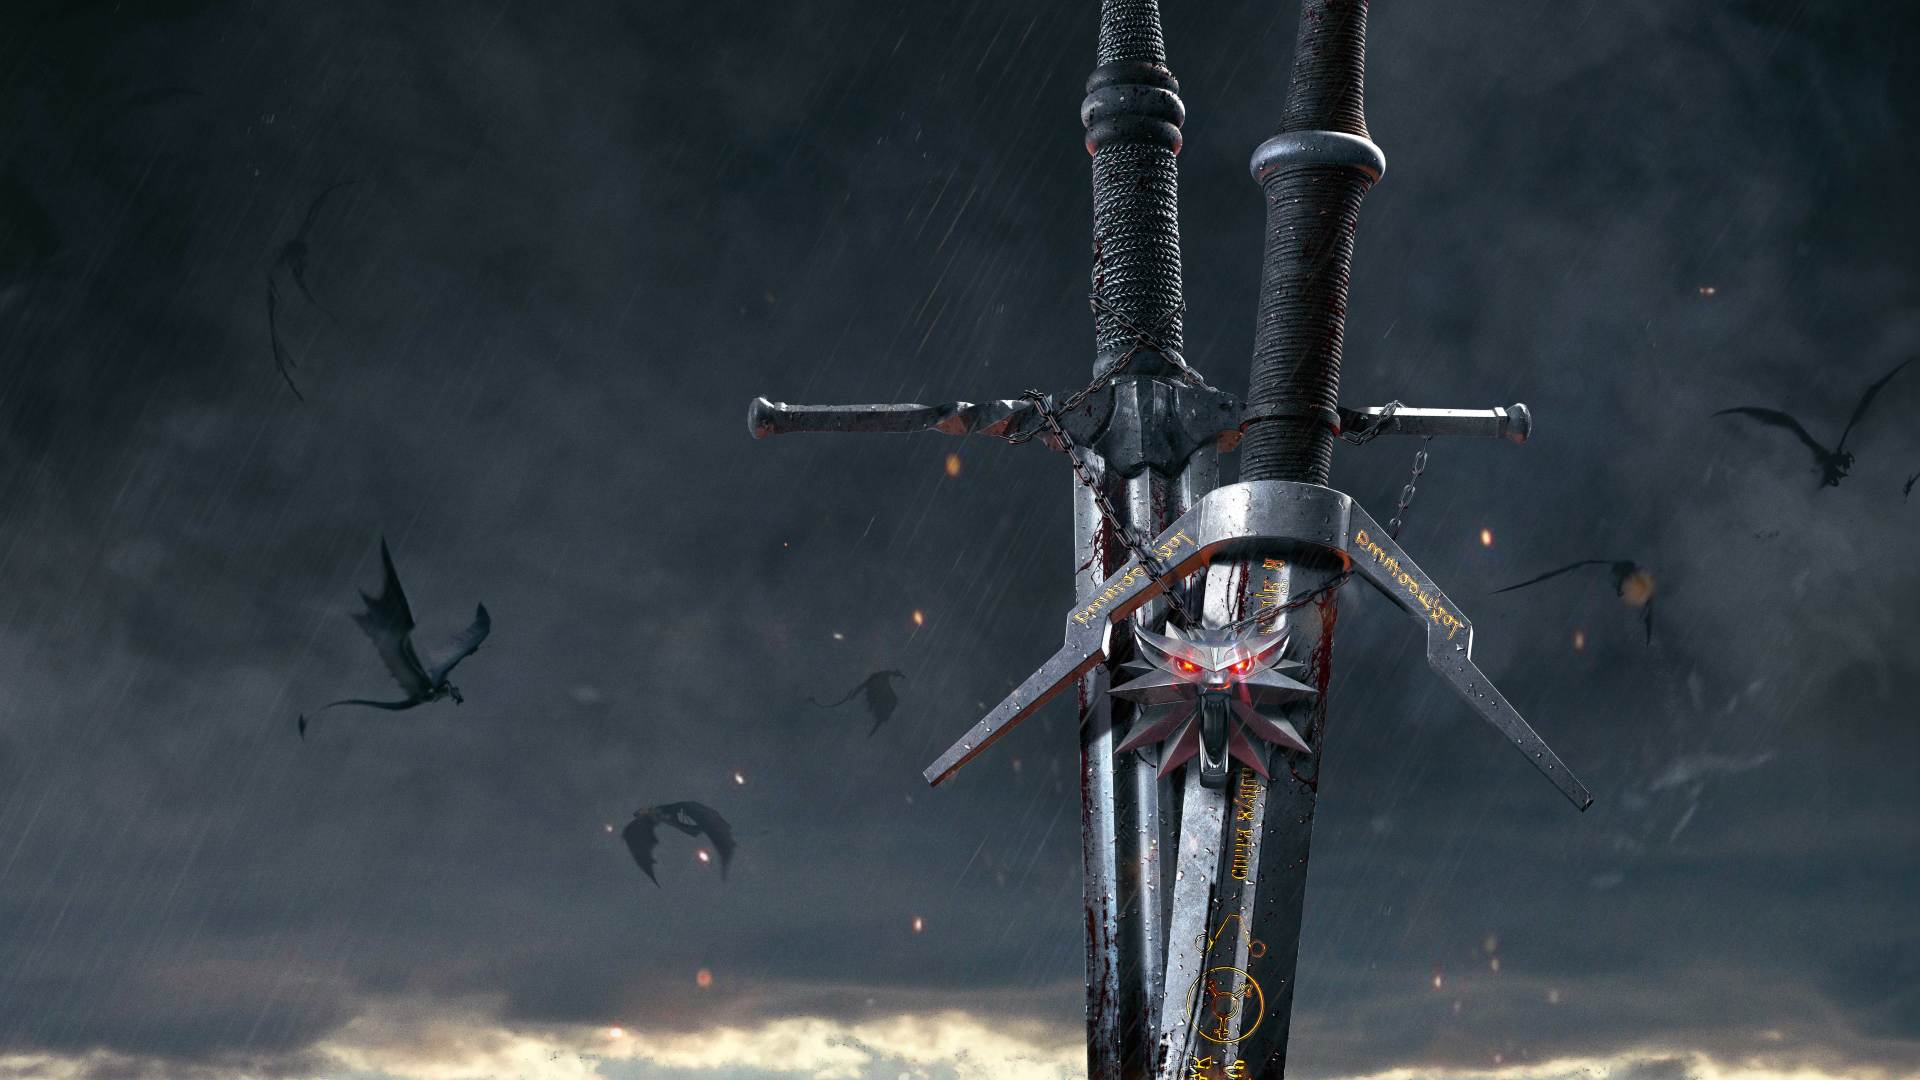 شمشیرهای ویچر و مدالیون در والپیپر بازی The Witcher 3: Wild Hunt شرکت لهستانی سی دی پراجکت